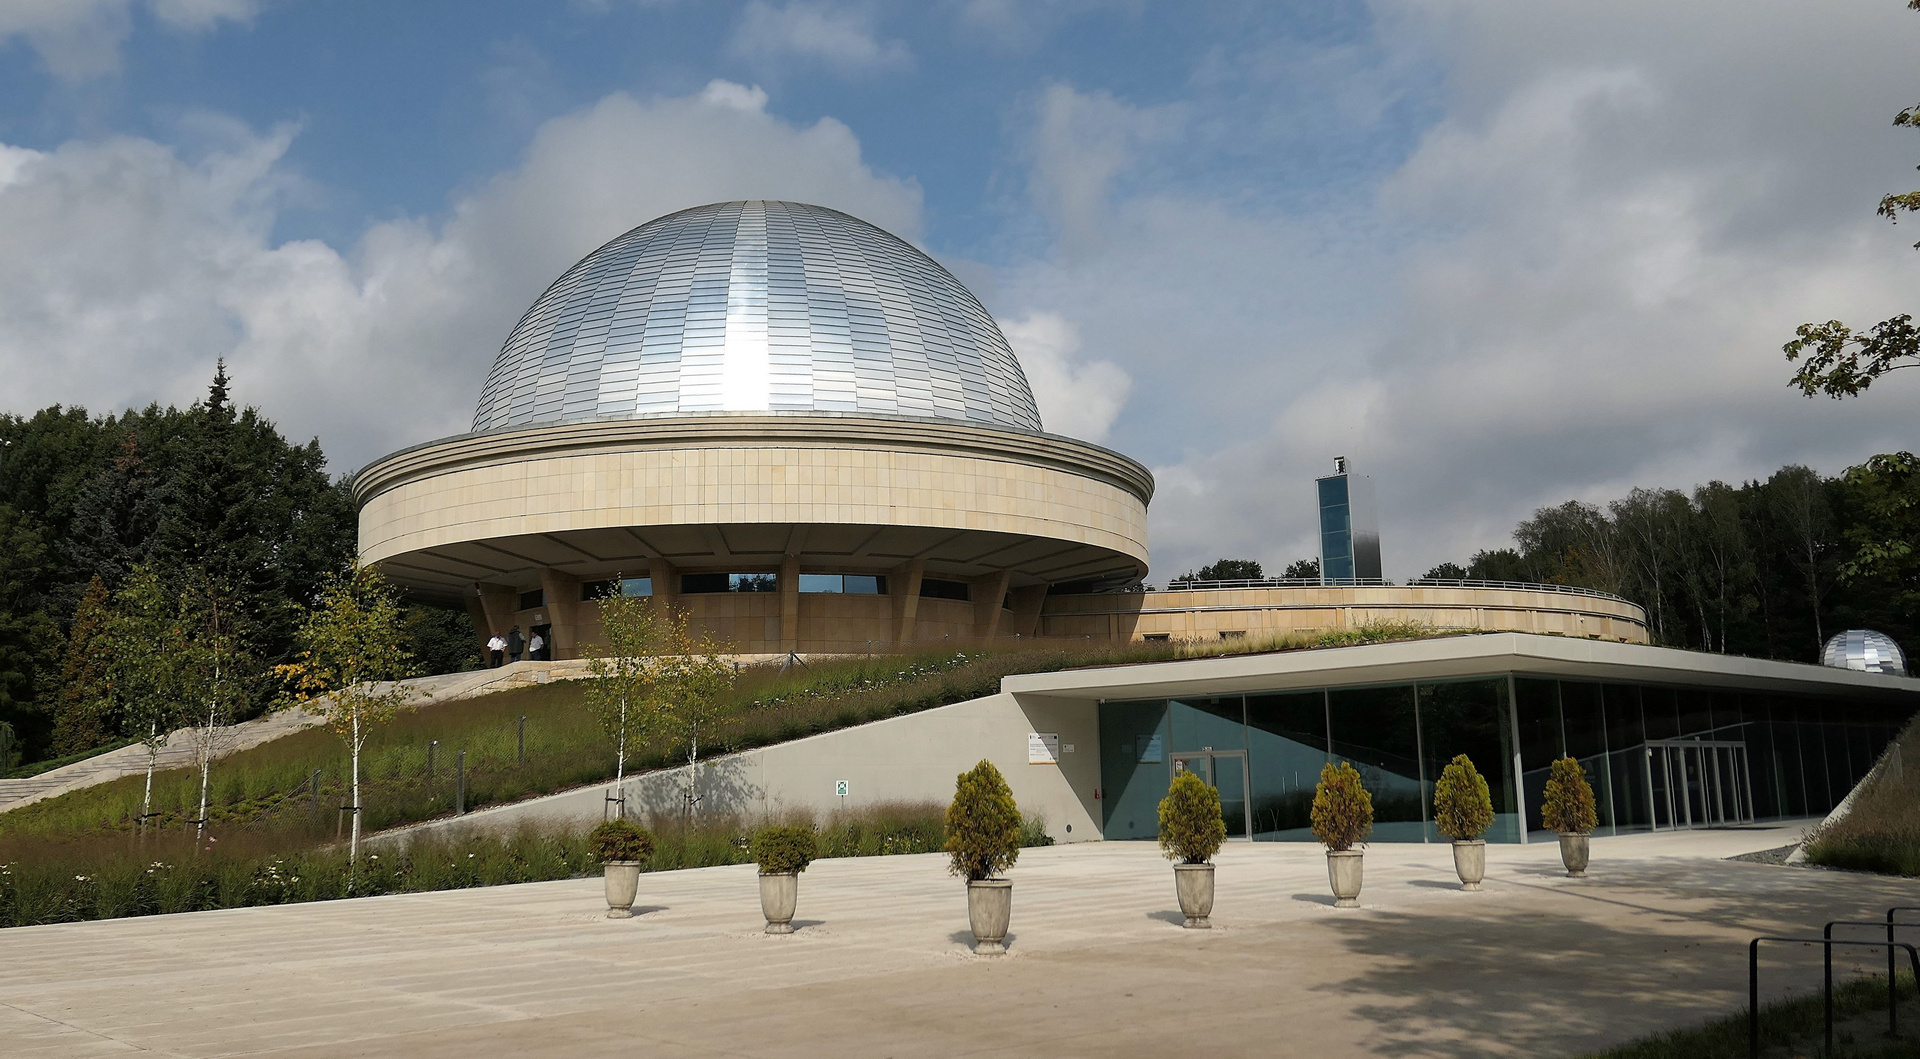 Z wizytą w Planetarium – Śląskim Parku Nauki